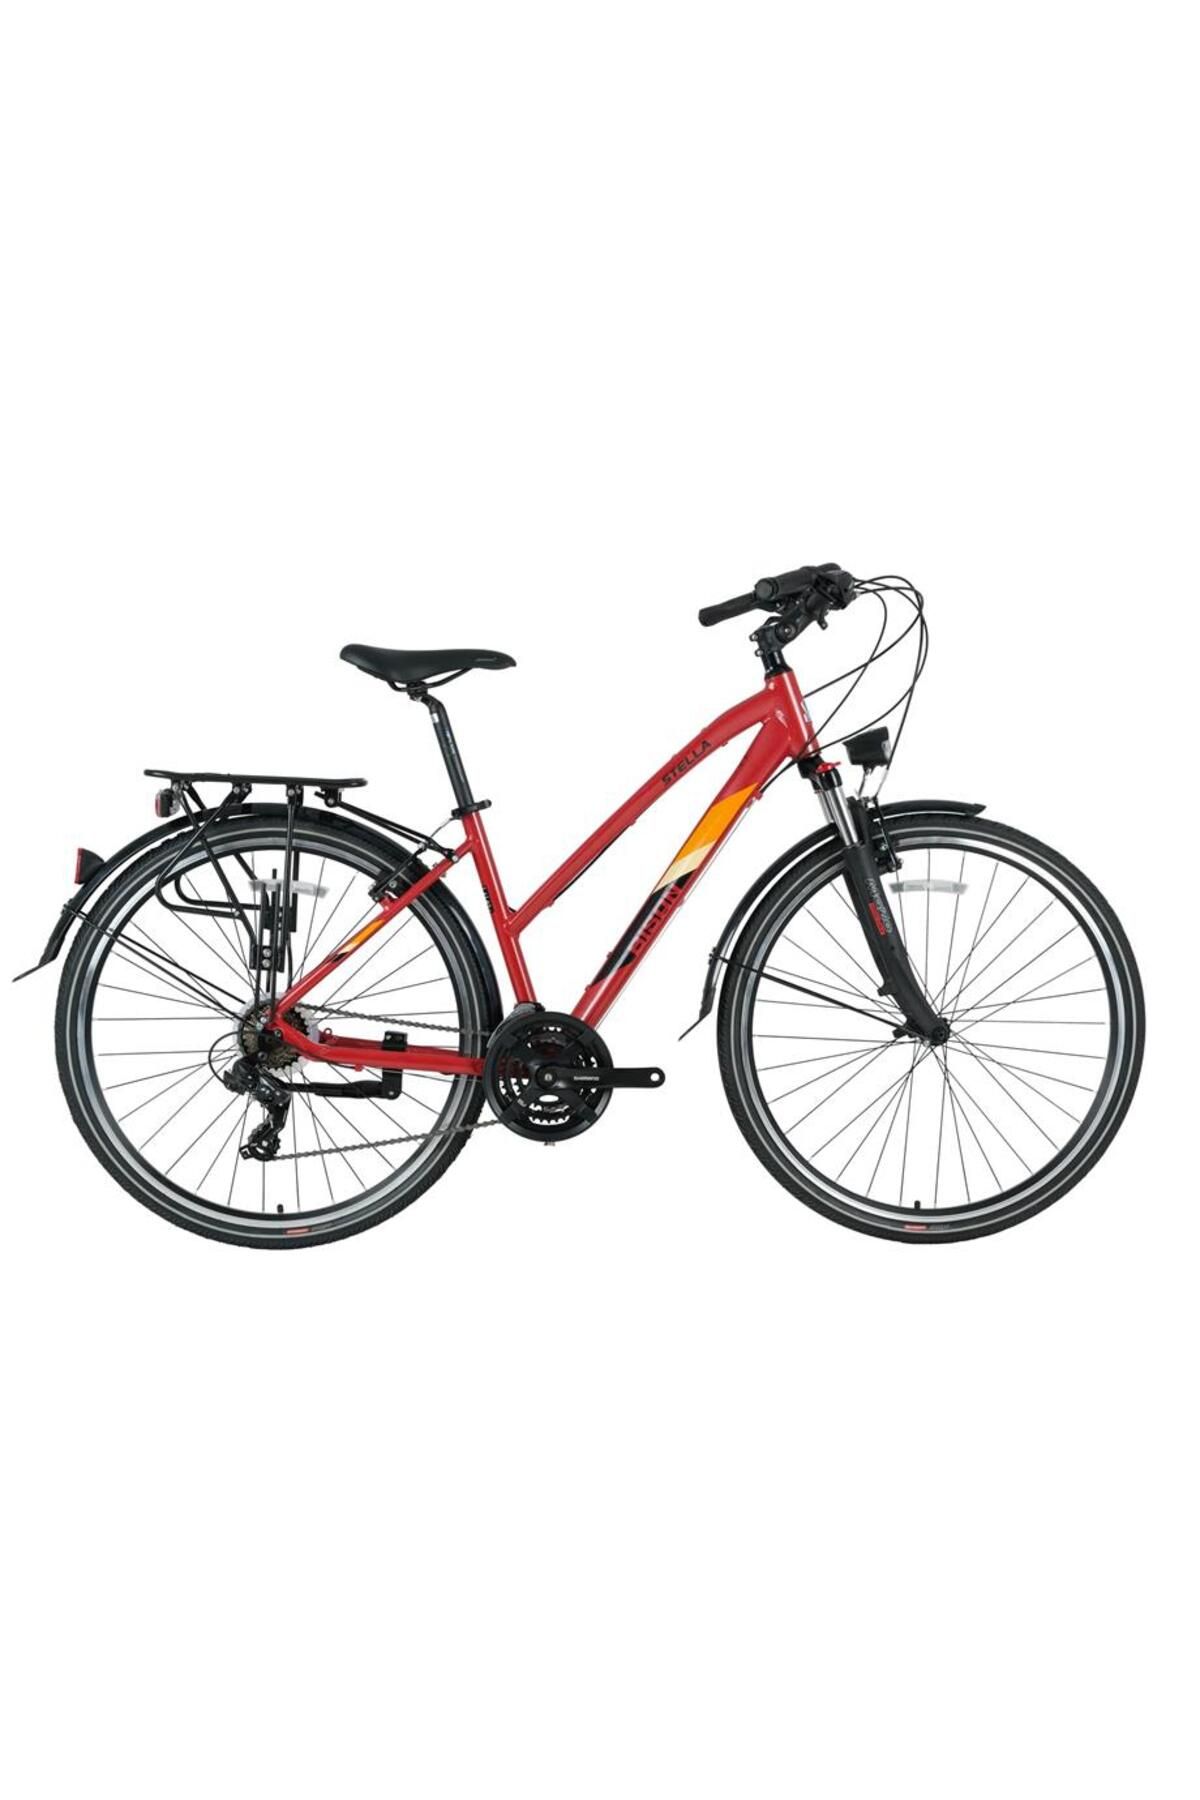 Bisan Stella Cıty Kadın Şehir Bisikleti 45cm V 28 Jant 21 Vites Kırmızı Sarı Kırmızı